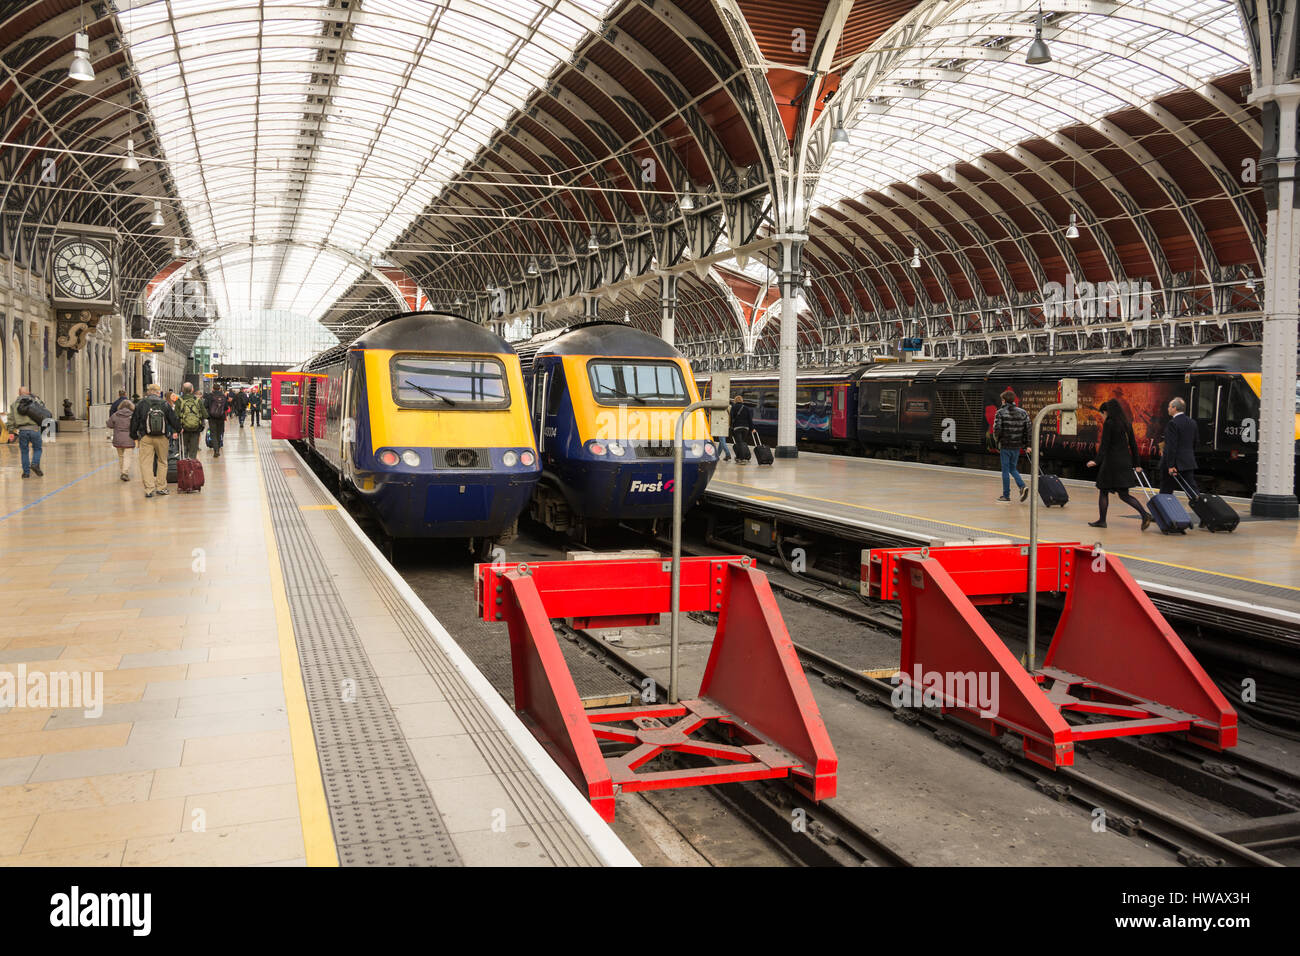 Les trains à grande vitesse Great Western Railway attendent de partir à la gare de Paddington, Londres, Angleterre, Royaume-Uni Banque D'Images